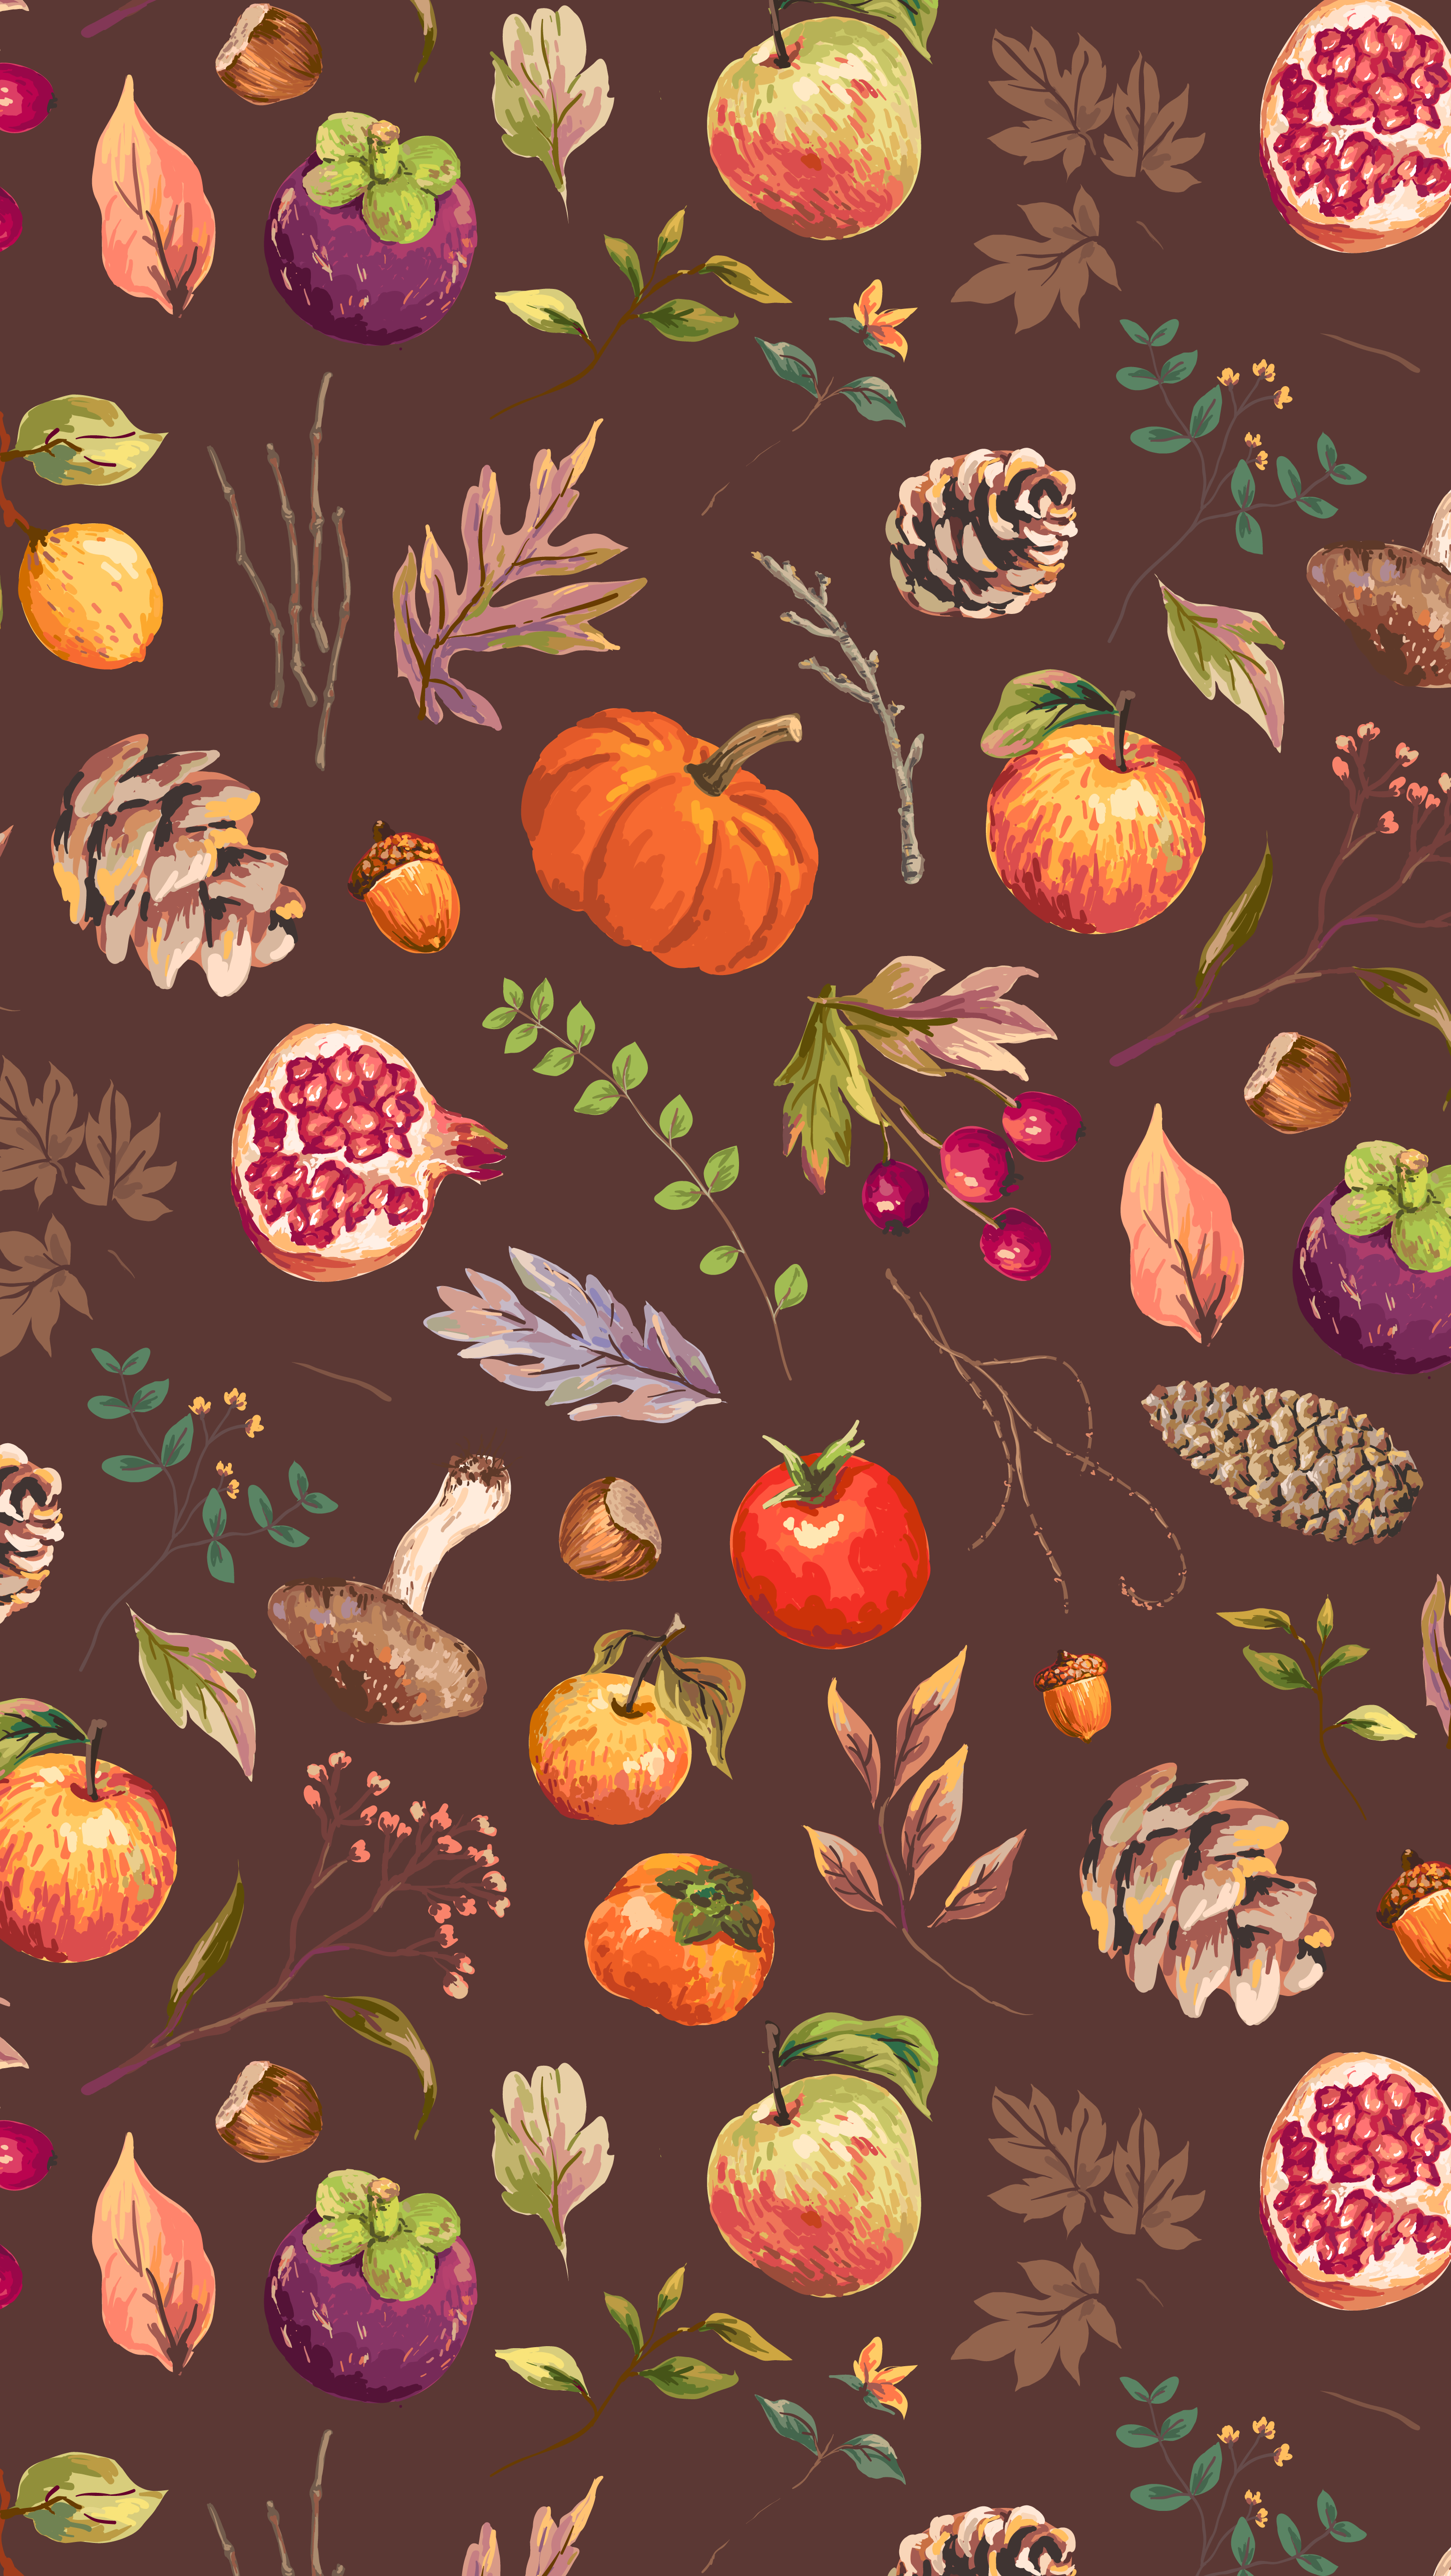 november iphone wallpaper,pattern,orange,design,illustration,leaf